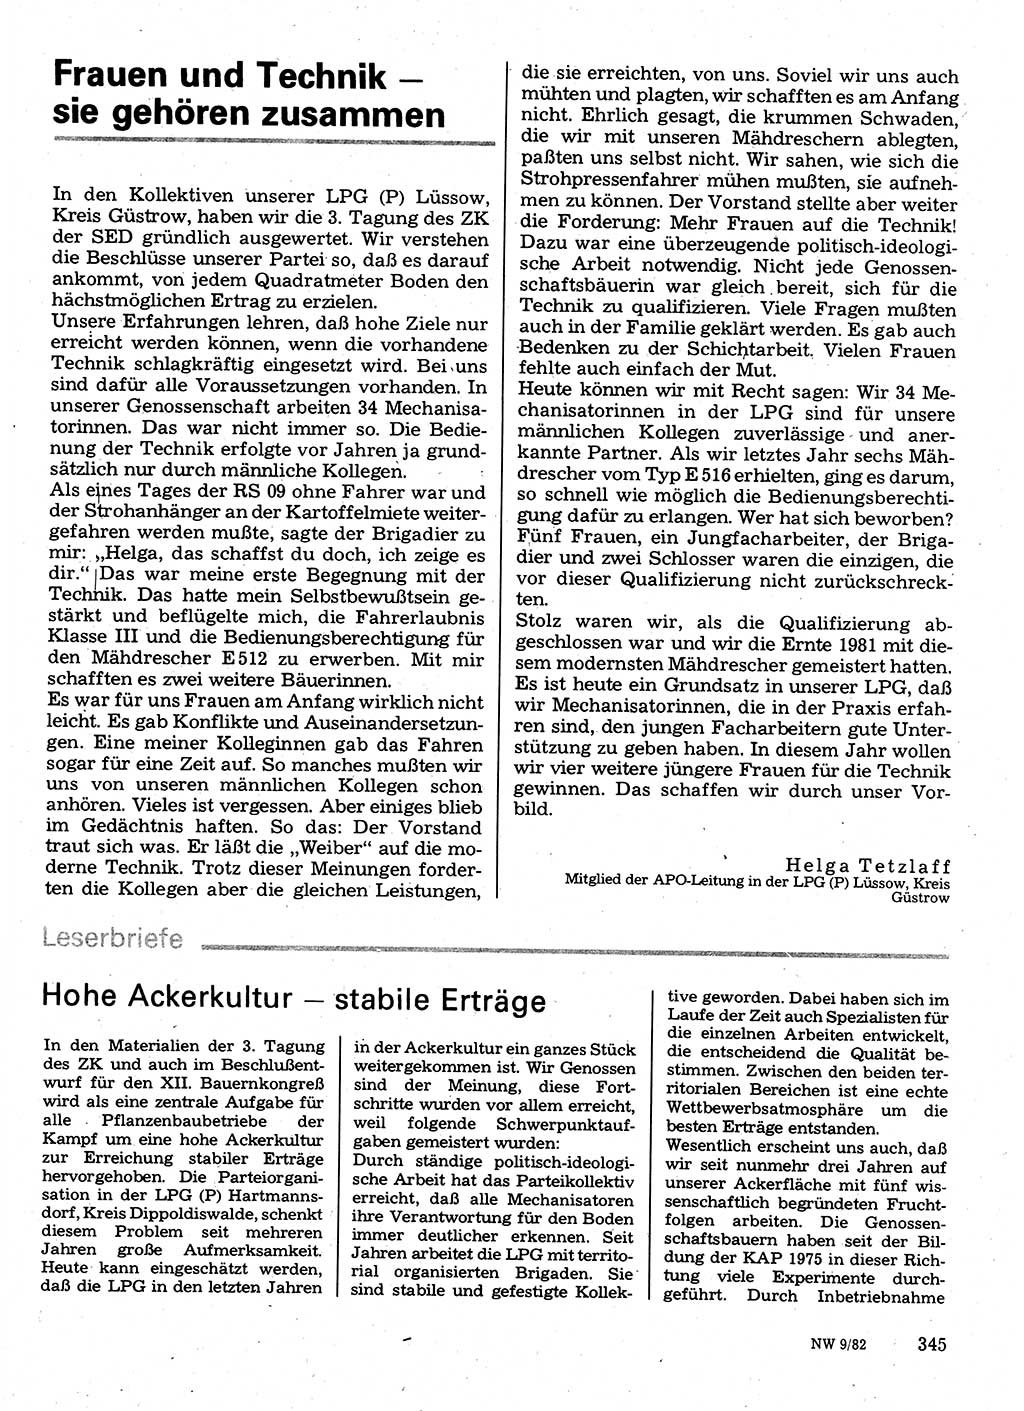 Neuer Weg (NW), Organ des Zentralkomitees (ZK) der SED (Sozialistische Einheitspartei Deutschlands) für Fragen des Parteilebens, 37. Jahrgang [Deutsche Demokratische Republik (DDR)] 1982, Seite 345 (NW ZK SED DDR 1982, S. 345)